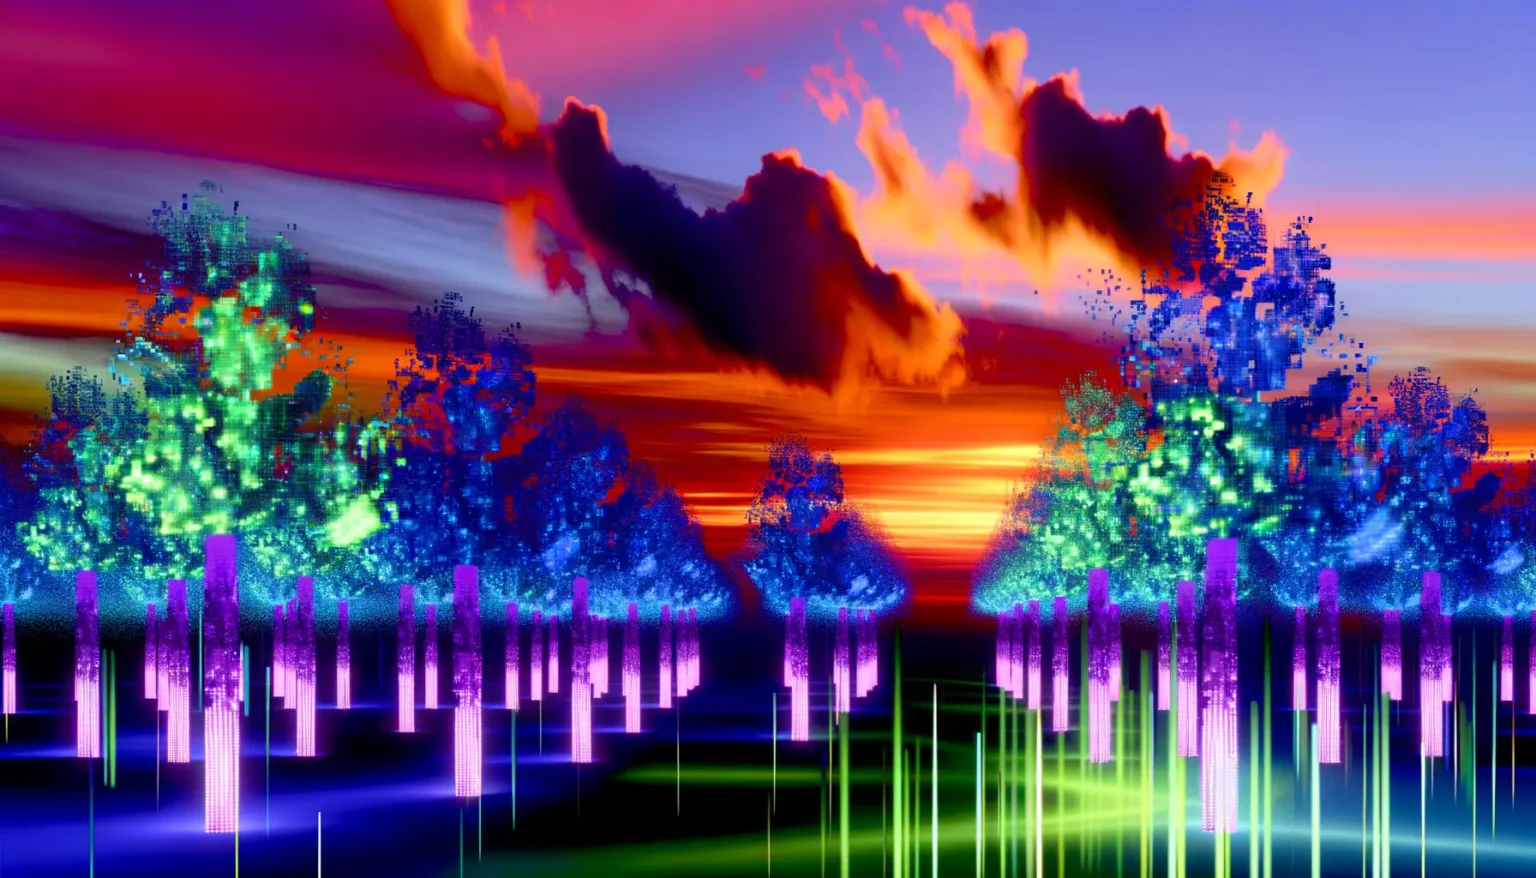 Ein digitales Kunstwerk, das eine abstrakte Landschaft bei Sonnenuntergang zeigt. Der Himmel ist in lebendigen Orange-, Rot- und Violetttönen gemalt, mit dynamischen, dunklen Wolken, die am oberen Bildrand vorbeiziehen. Die Landschaft wirkt durch pixelartige Bäume und Strukturen in kühlen Blau- und Grüntönen, die auf einer glatten dunkelblauen Oberfläche stehen, futuristisch. Einige Bäume haben helle grüne Highlights, die an Lichtreflexe erinnern. Unter den Bäumen befinden sich vertikale, pinkfarbene Streifen, die wie leuchtende Säulen wirken und in verschiedenen Intensitäten bis zum unteren Bildrand leuchten. Das Bild strahlt eine lebhafte und digitale Atmosphäre aus.